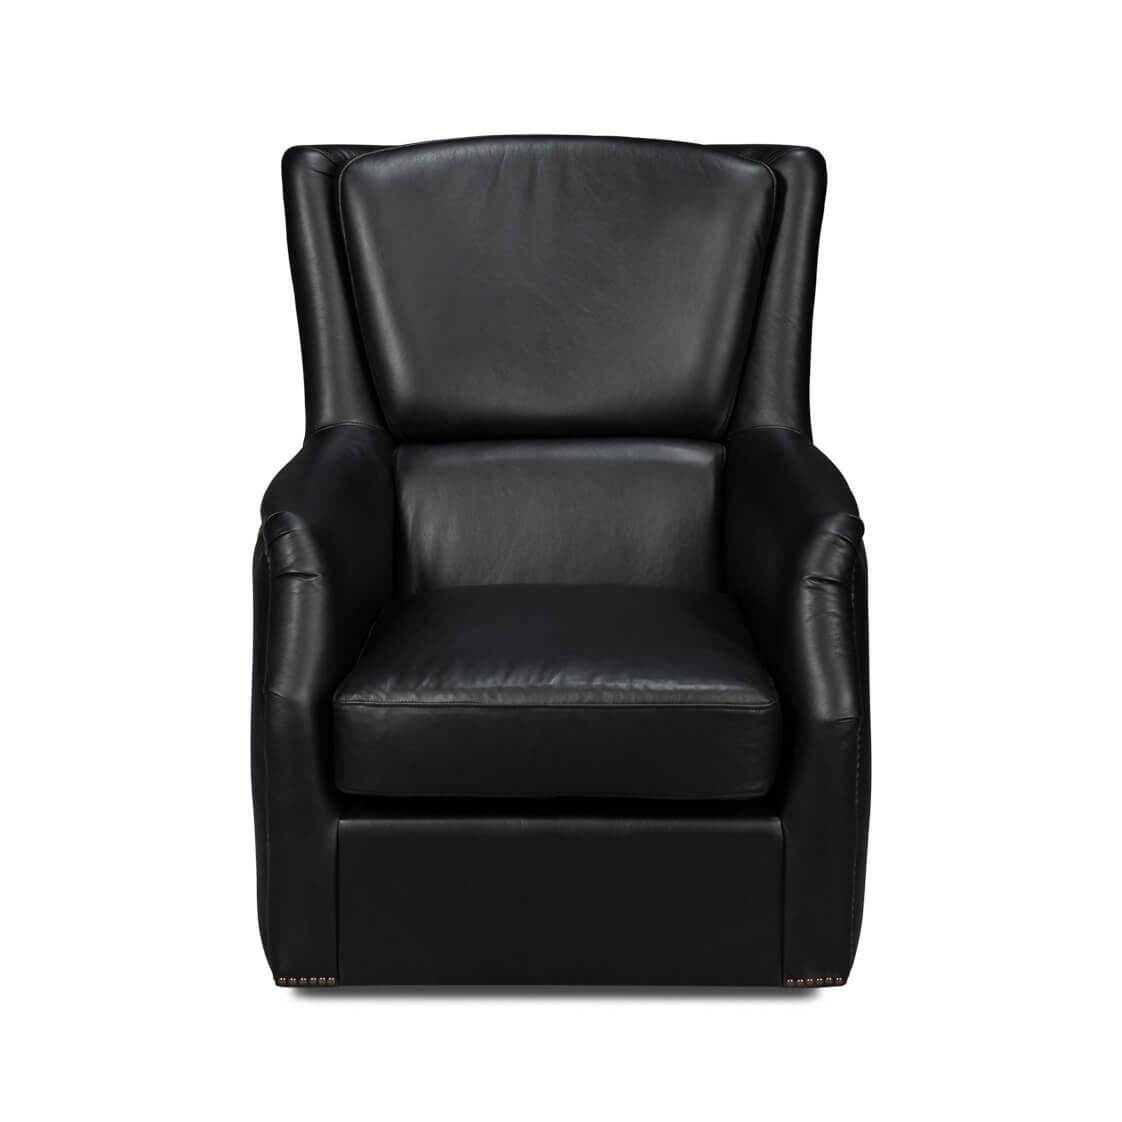 
Cette chaise classique est recouverte de notre cuir classique Onyx Black et fabriquée avec du cuir Aniline pur de première qualité.

Dimensions : 31